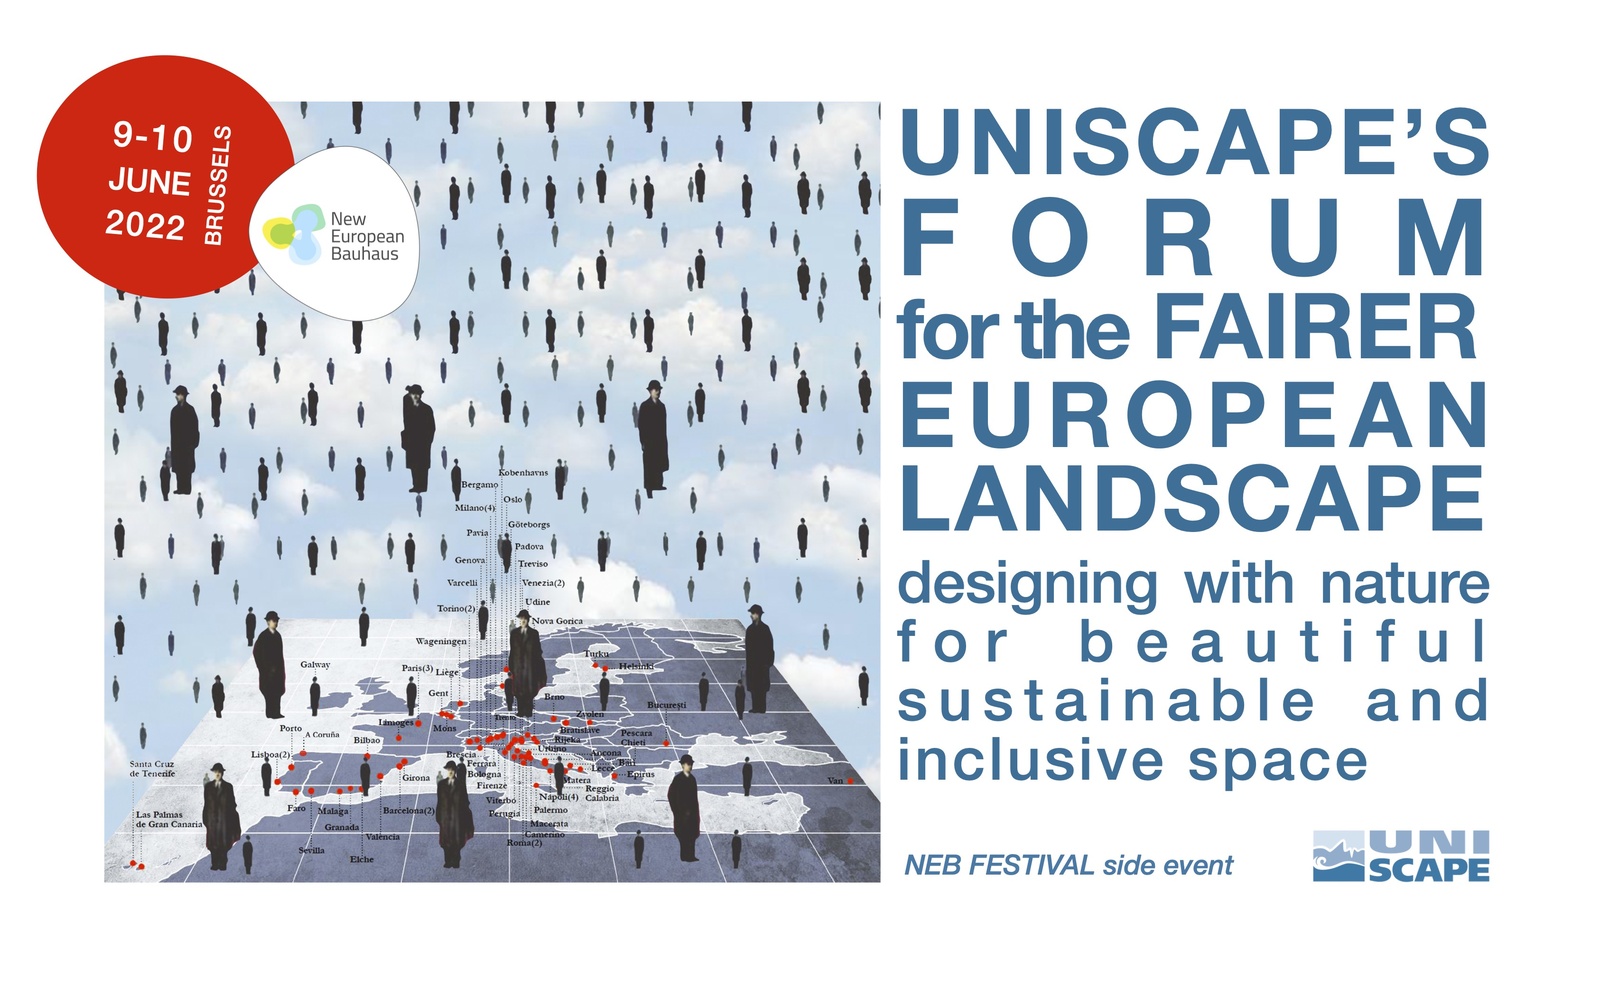 UNISCAPE’s forum for the FAIRER EUROPEAN LANDSCAPE